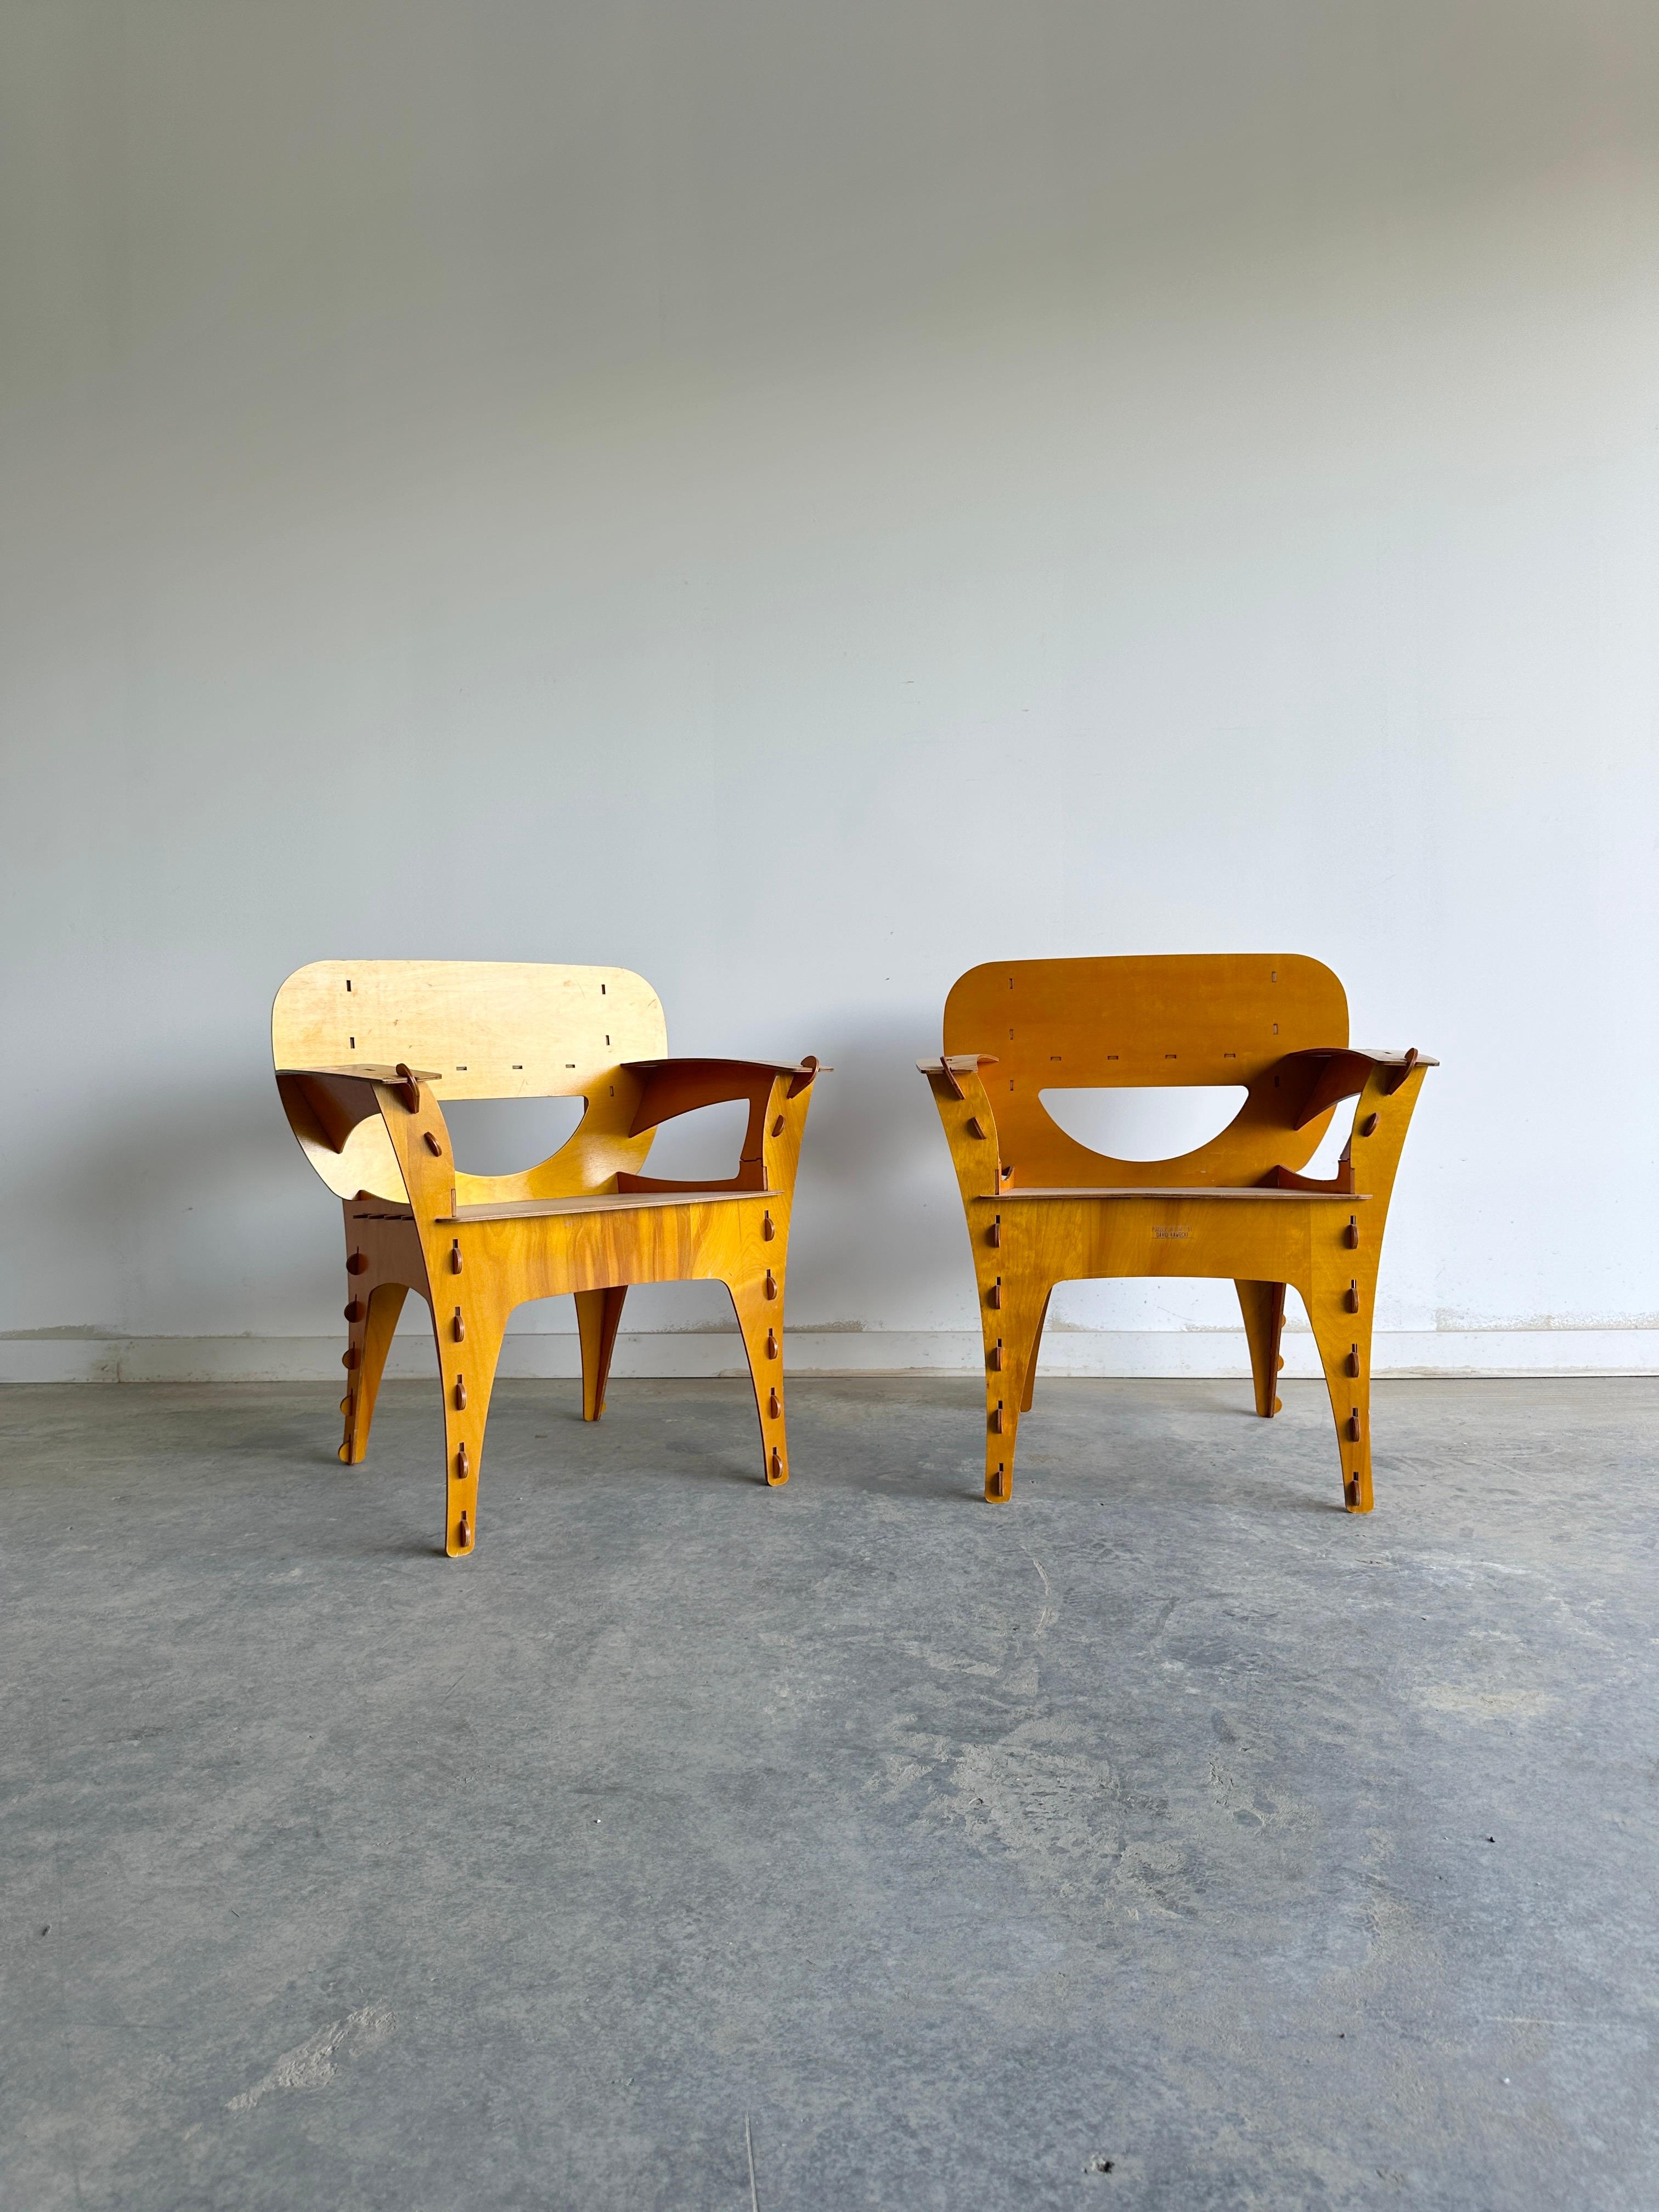 David Kawecki est un designer qui crée des chaises uniques et ludiques qui ressemblent à des puzzles. Ses chaises-puzzles sont constituées de pièces de contreplaqué découpées au laser qui s'emboîtent sans colle, ni clou, ni revêtement toxique. Les